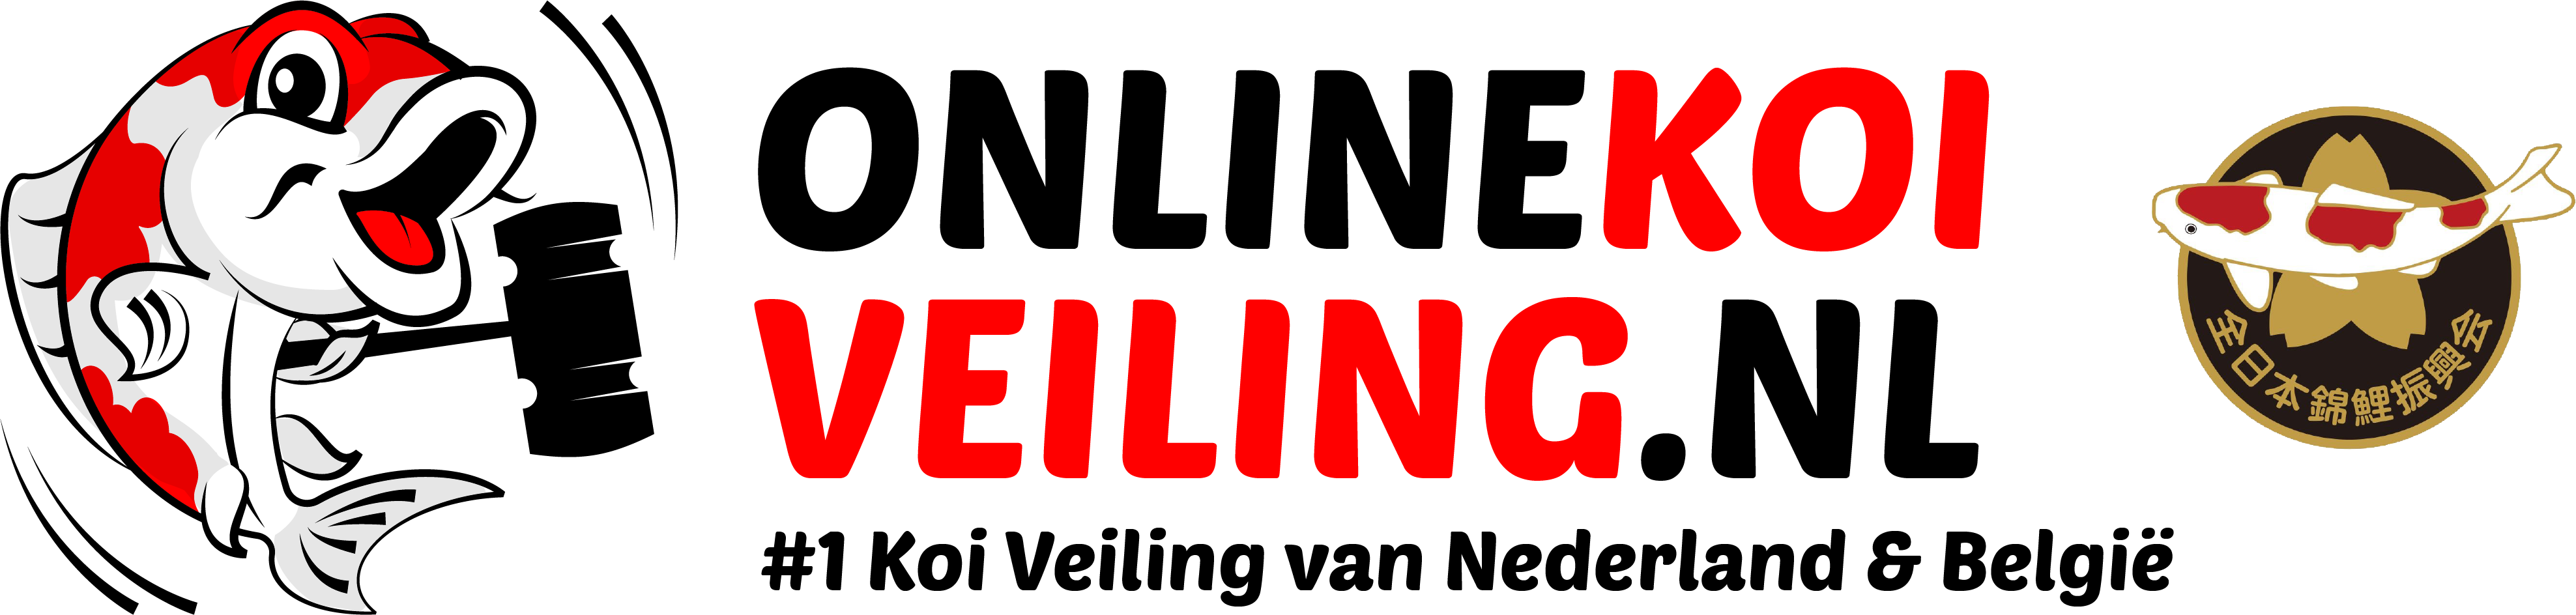 Online Koi Veiling | Onlinekoiveiling.nl